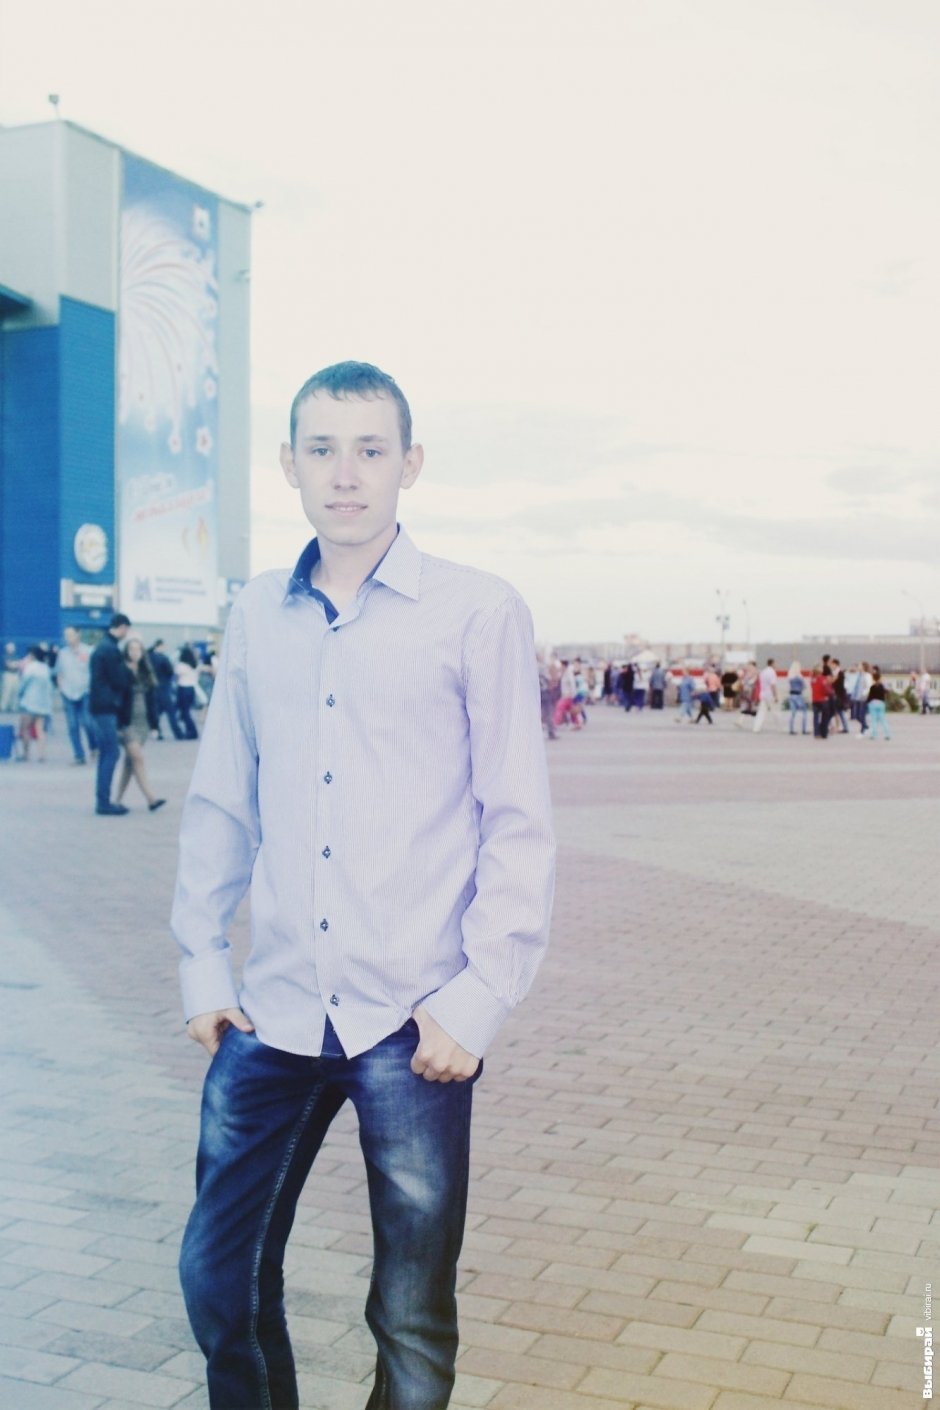 Олег, 21 год, студент Григорий Лепс.